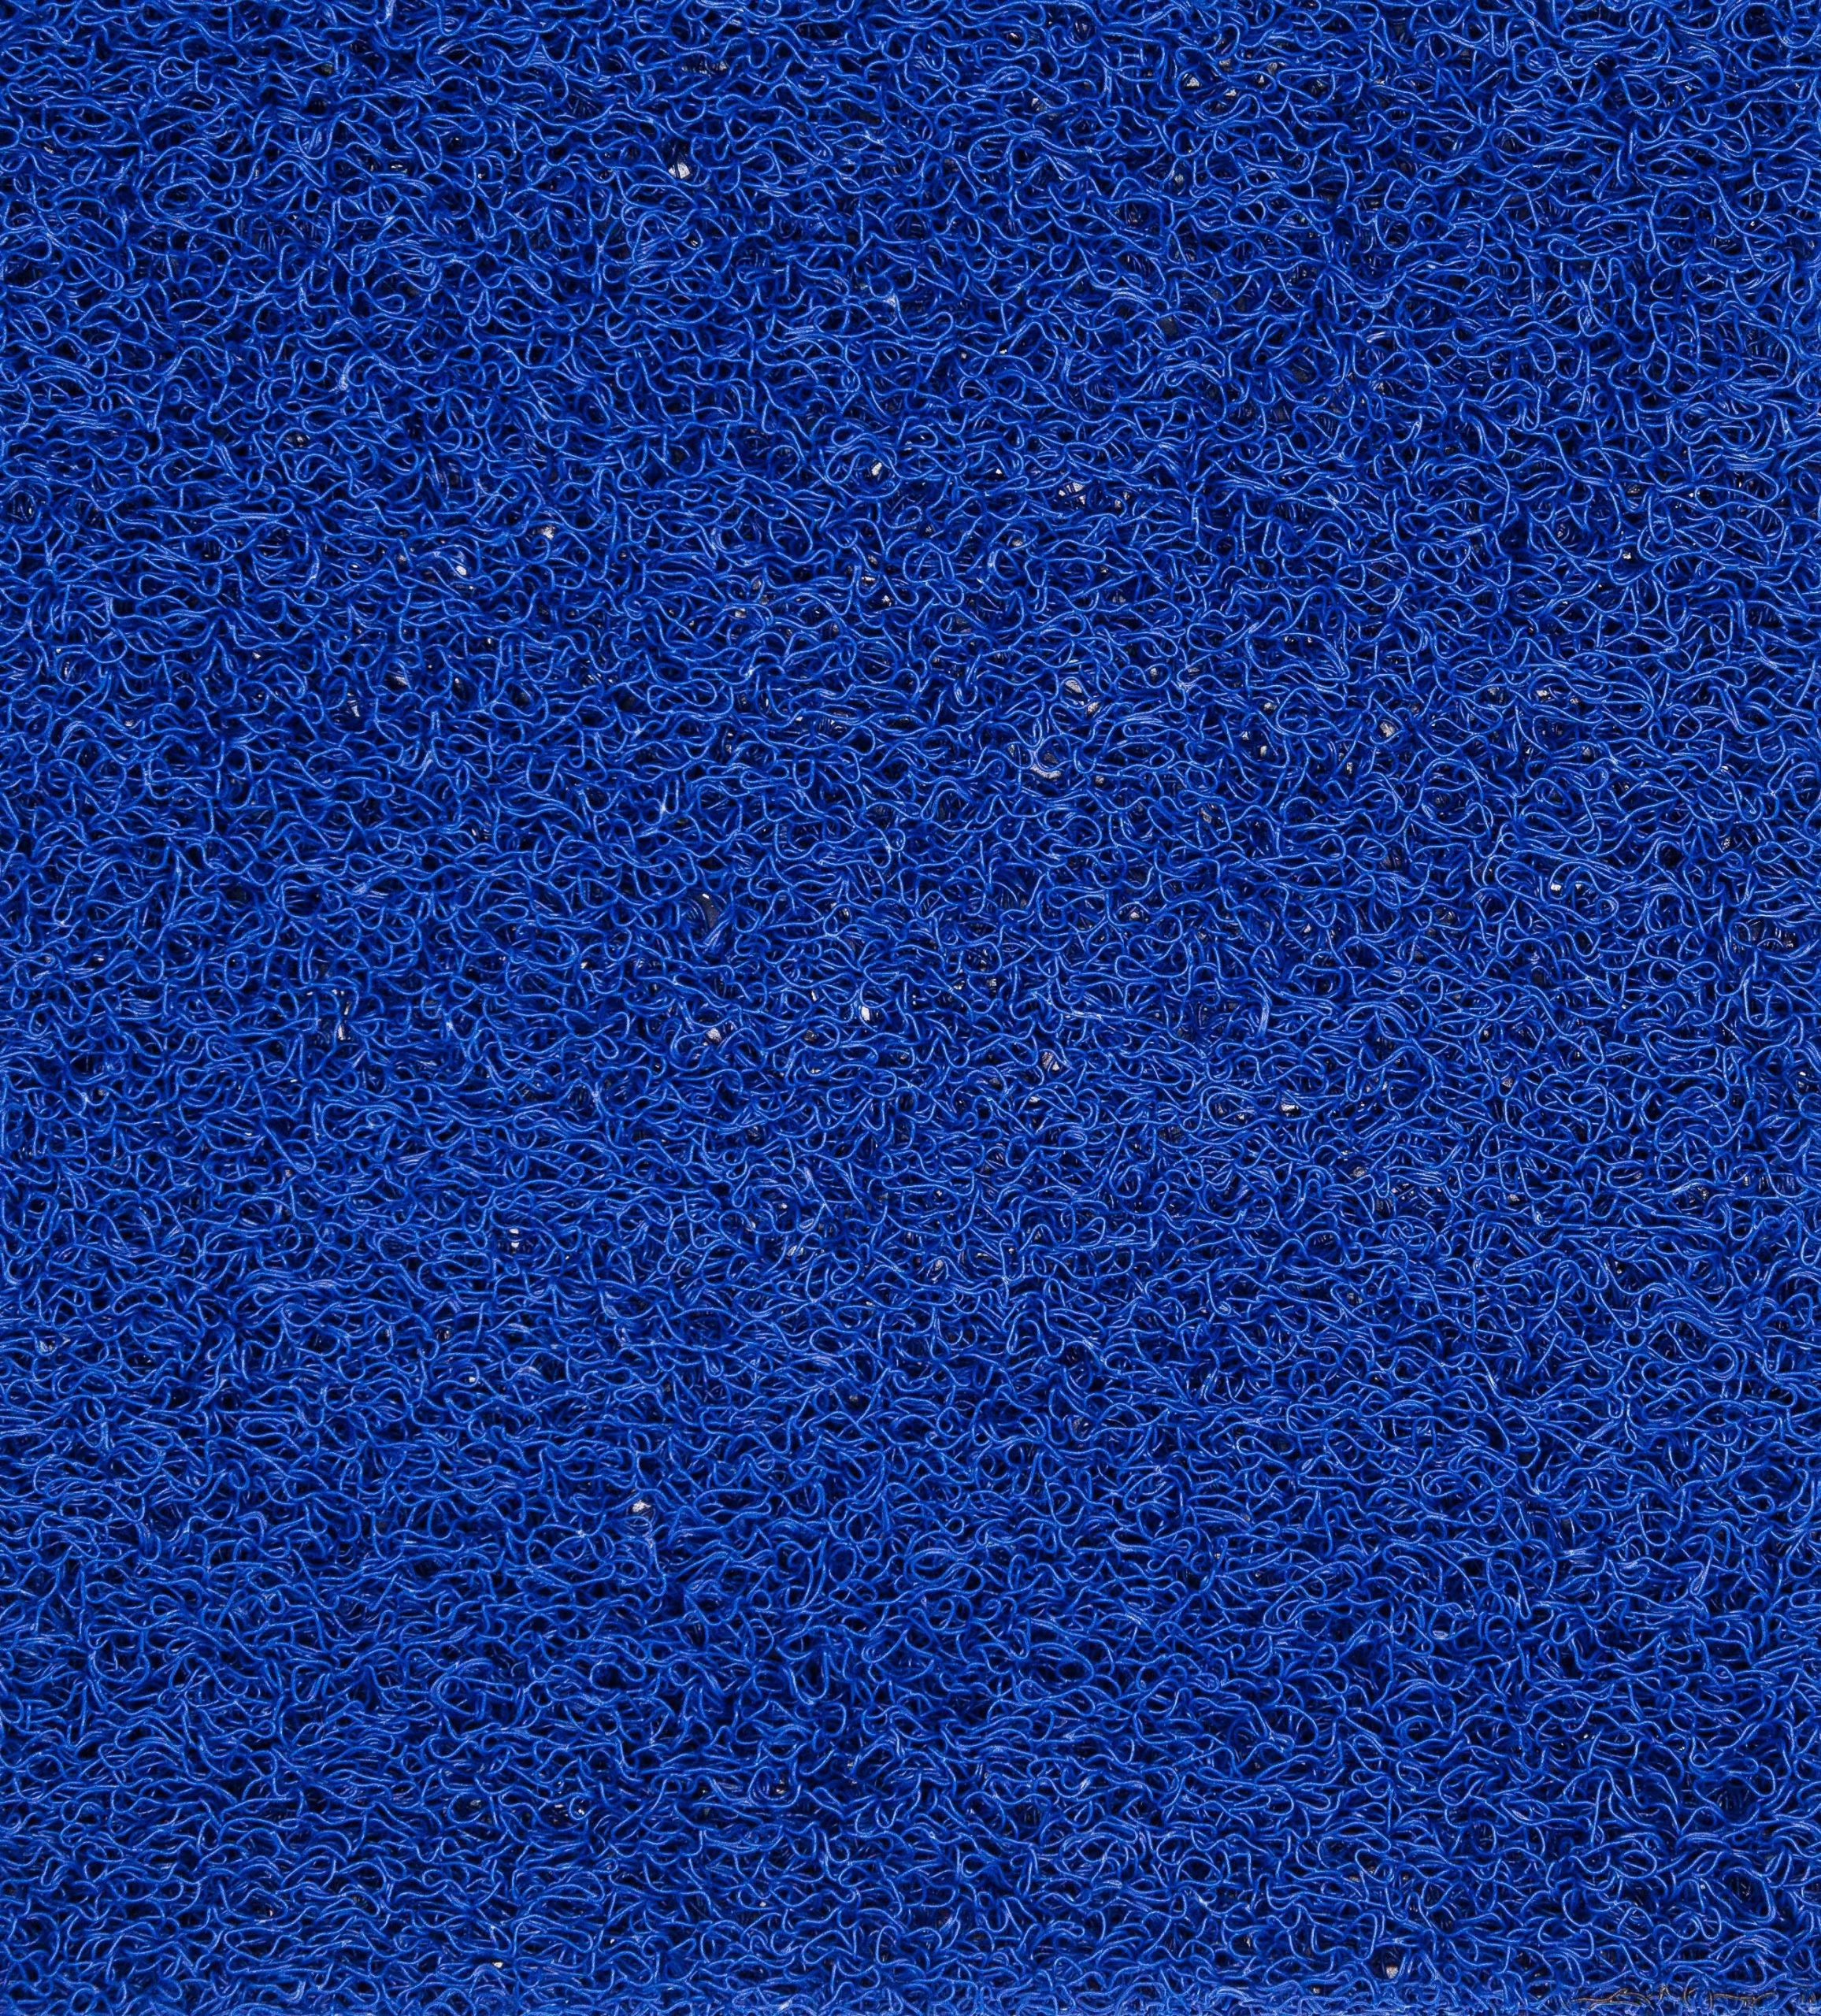 ΠΛΑΣΤΙΚΟ ΔΑΠΕΔΟ SPAGHETTI 15mm BLUE 1.22M NewPlan